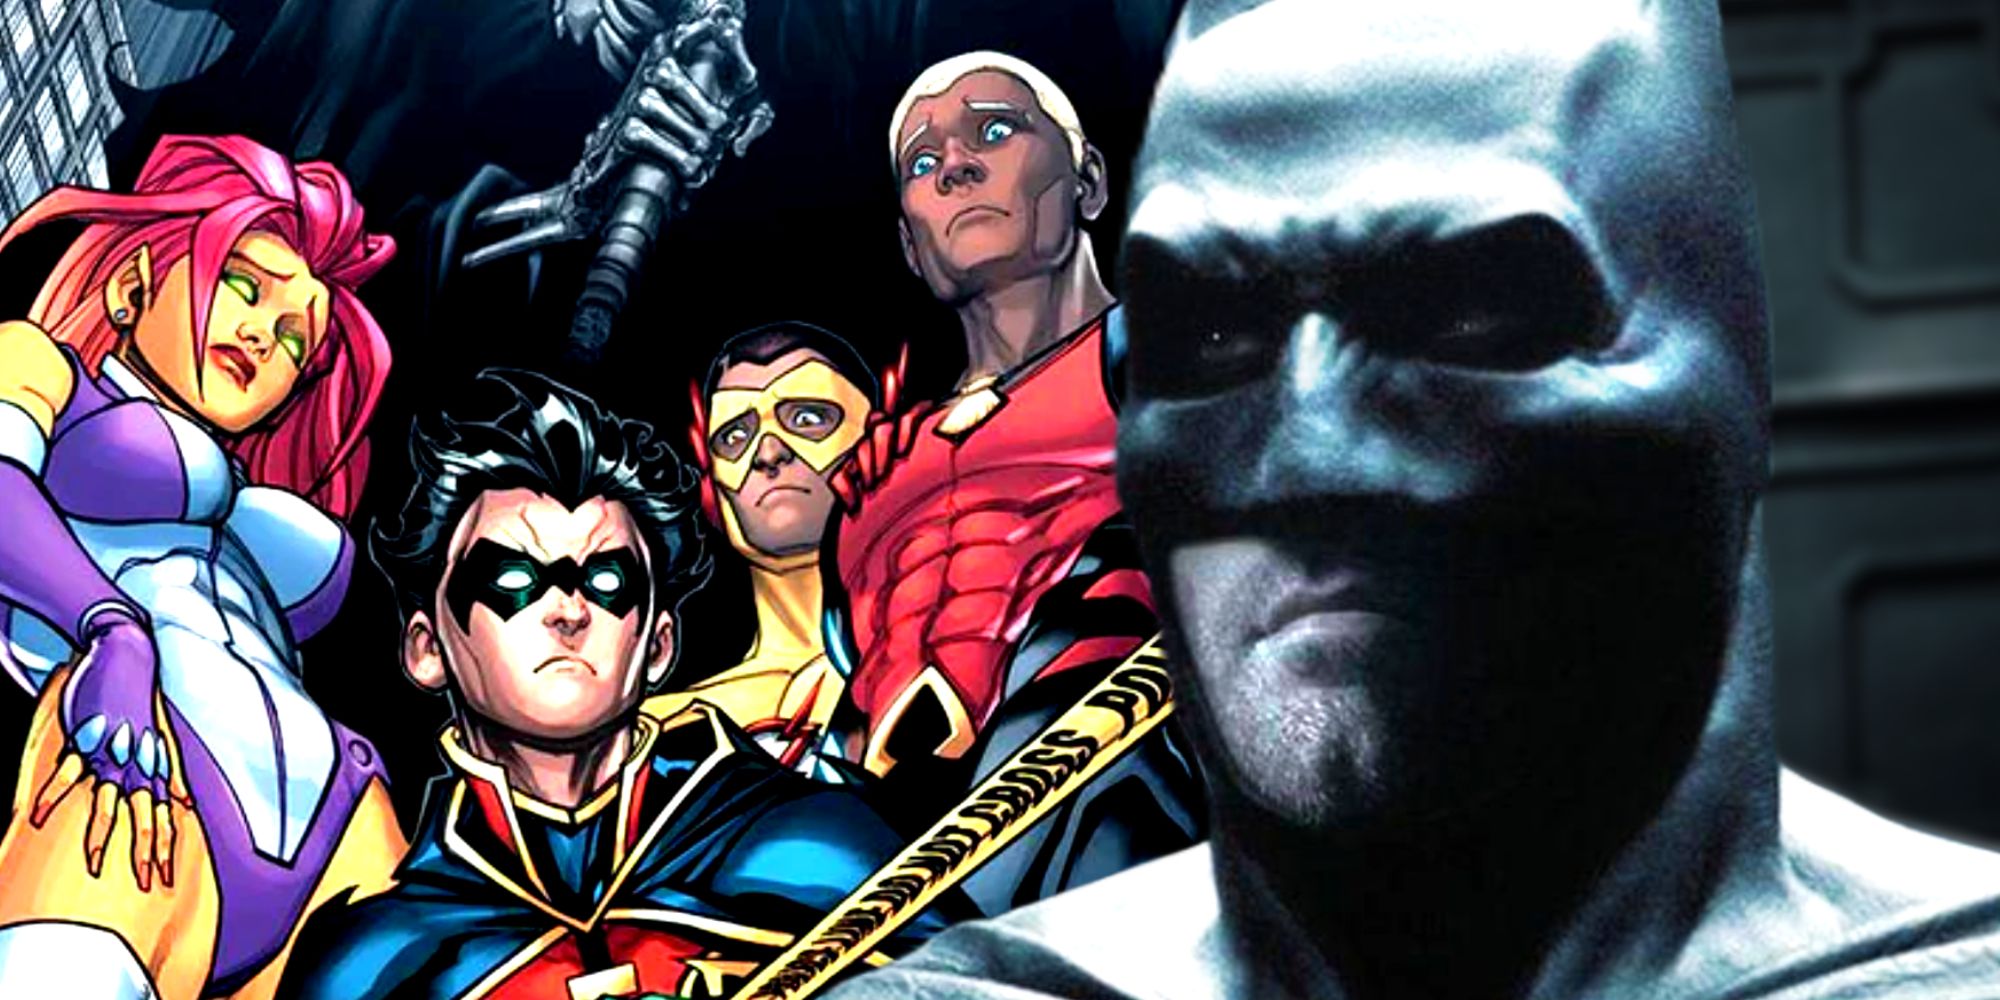 Ben Affleck's Batman in the DCEU and Teen Titans in DC Comics